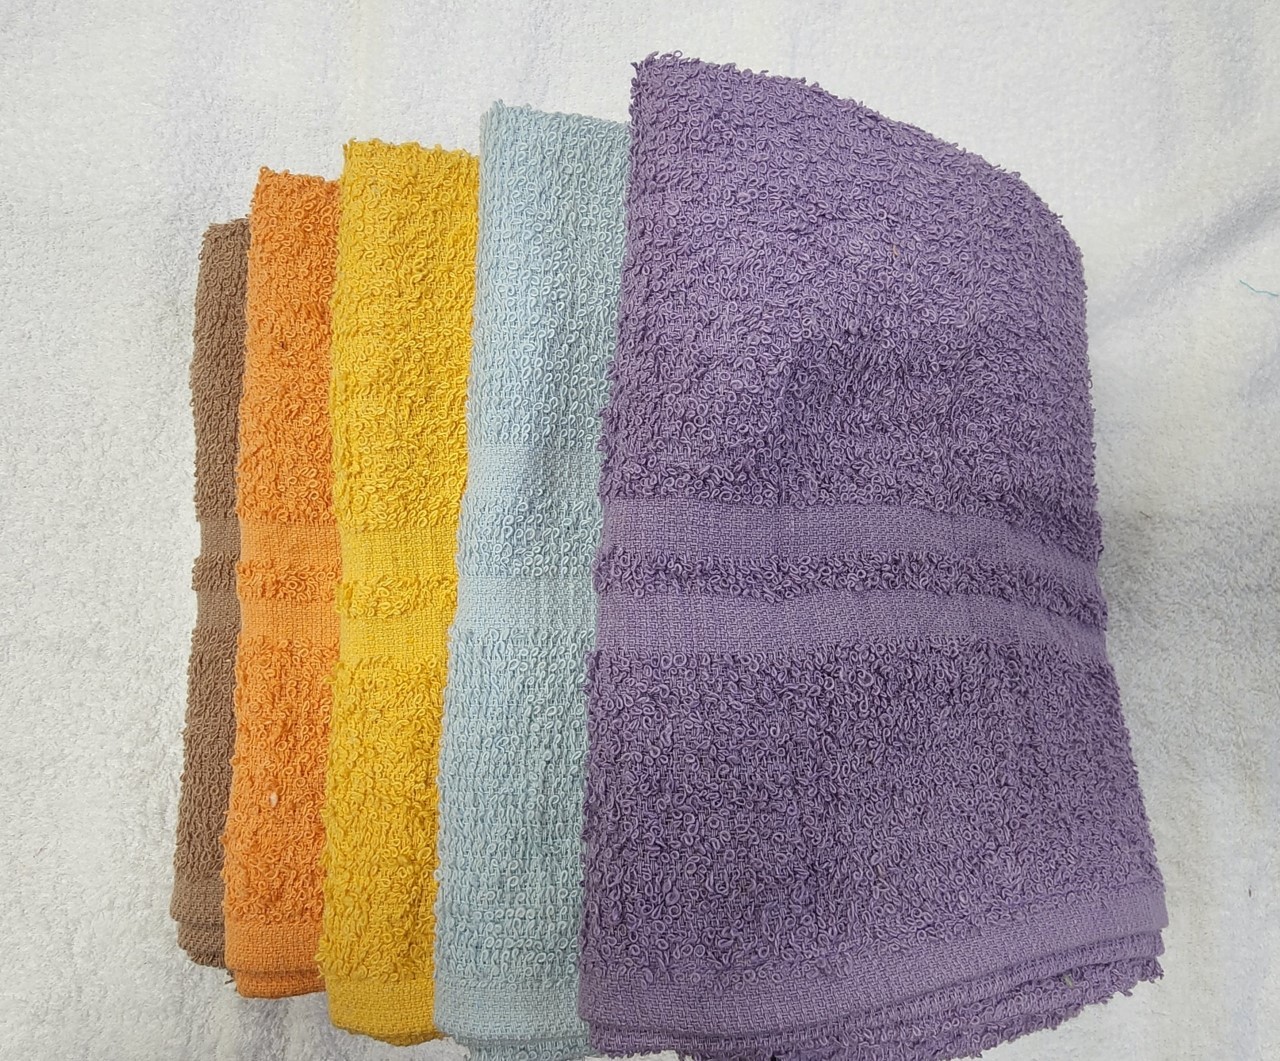 Wholesale Cotton Terry Bath Towels 20x40 White